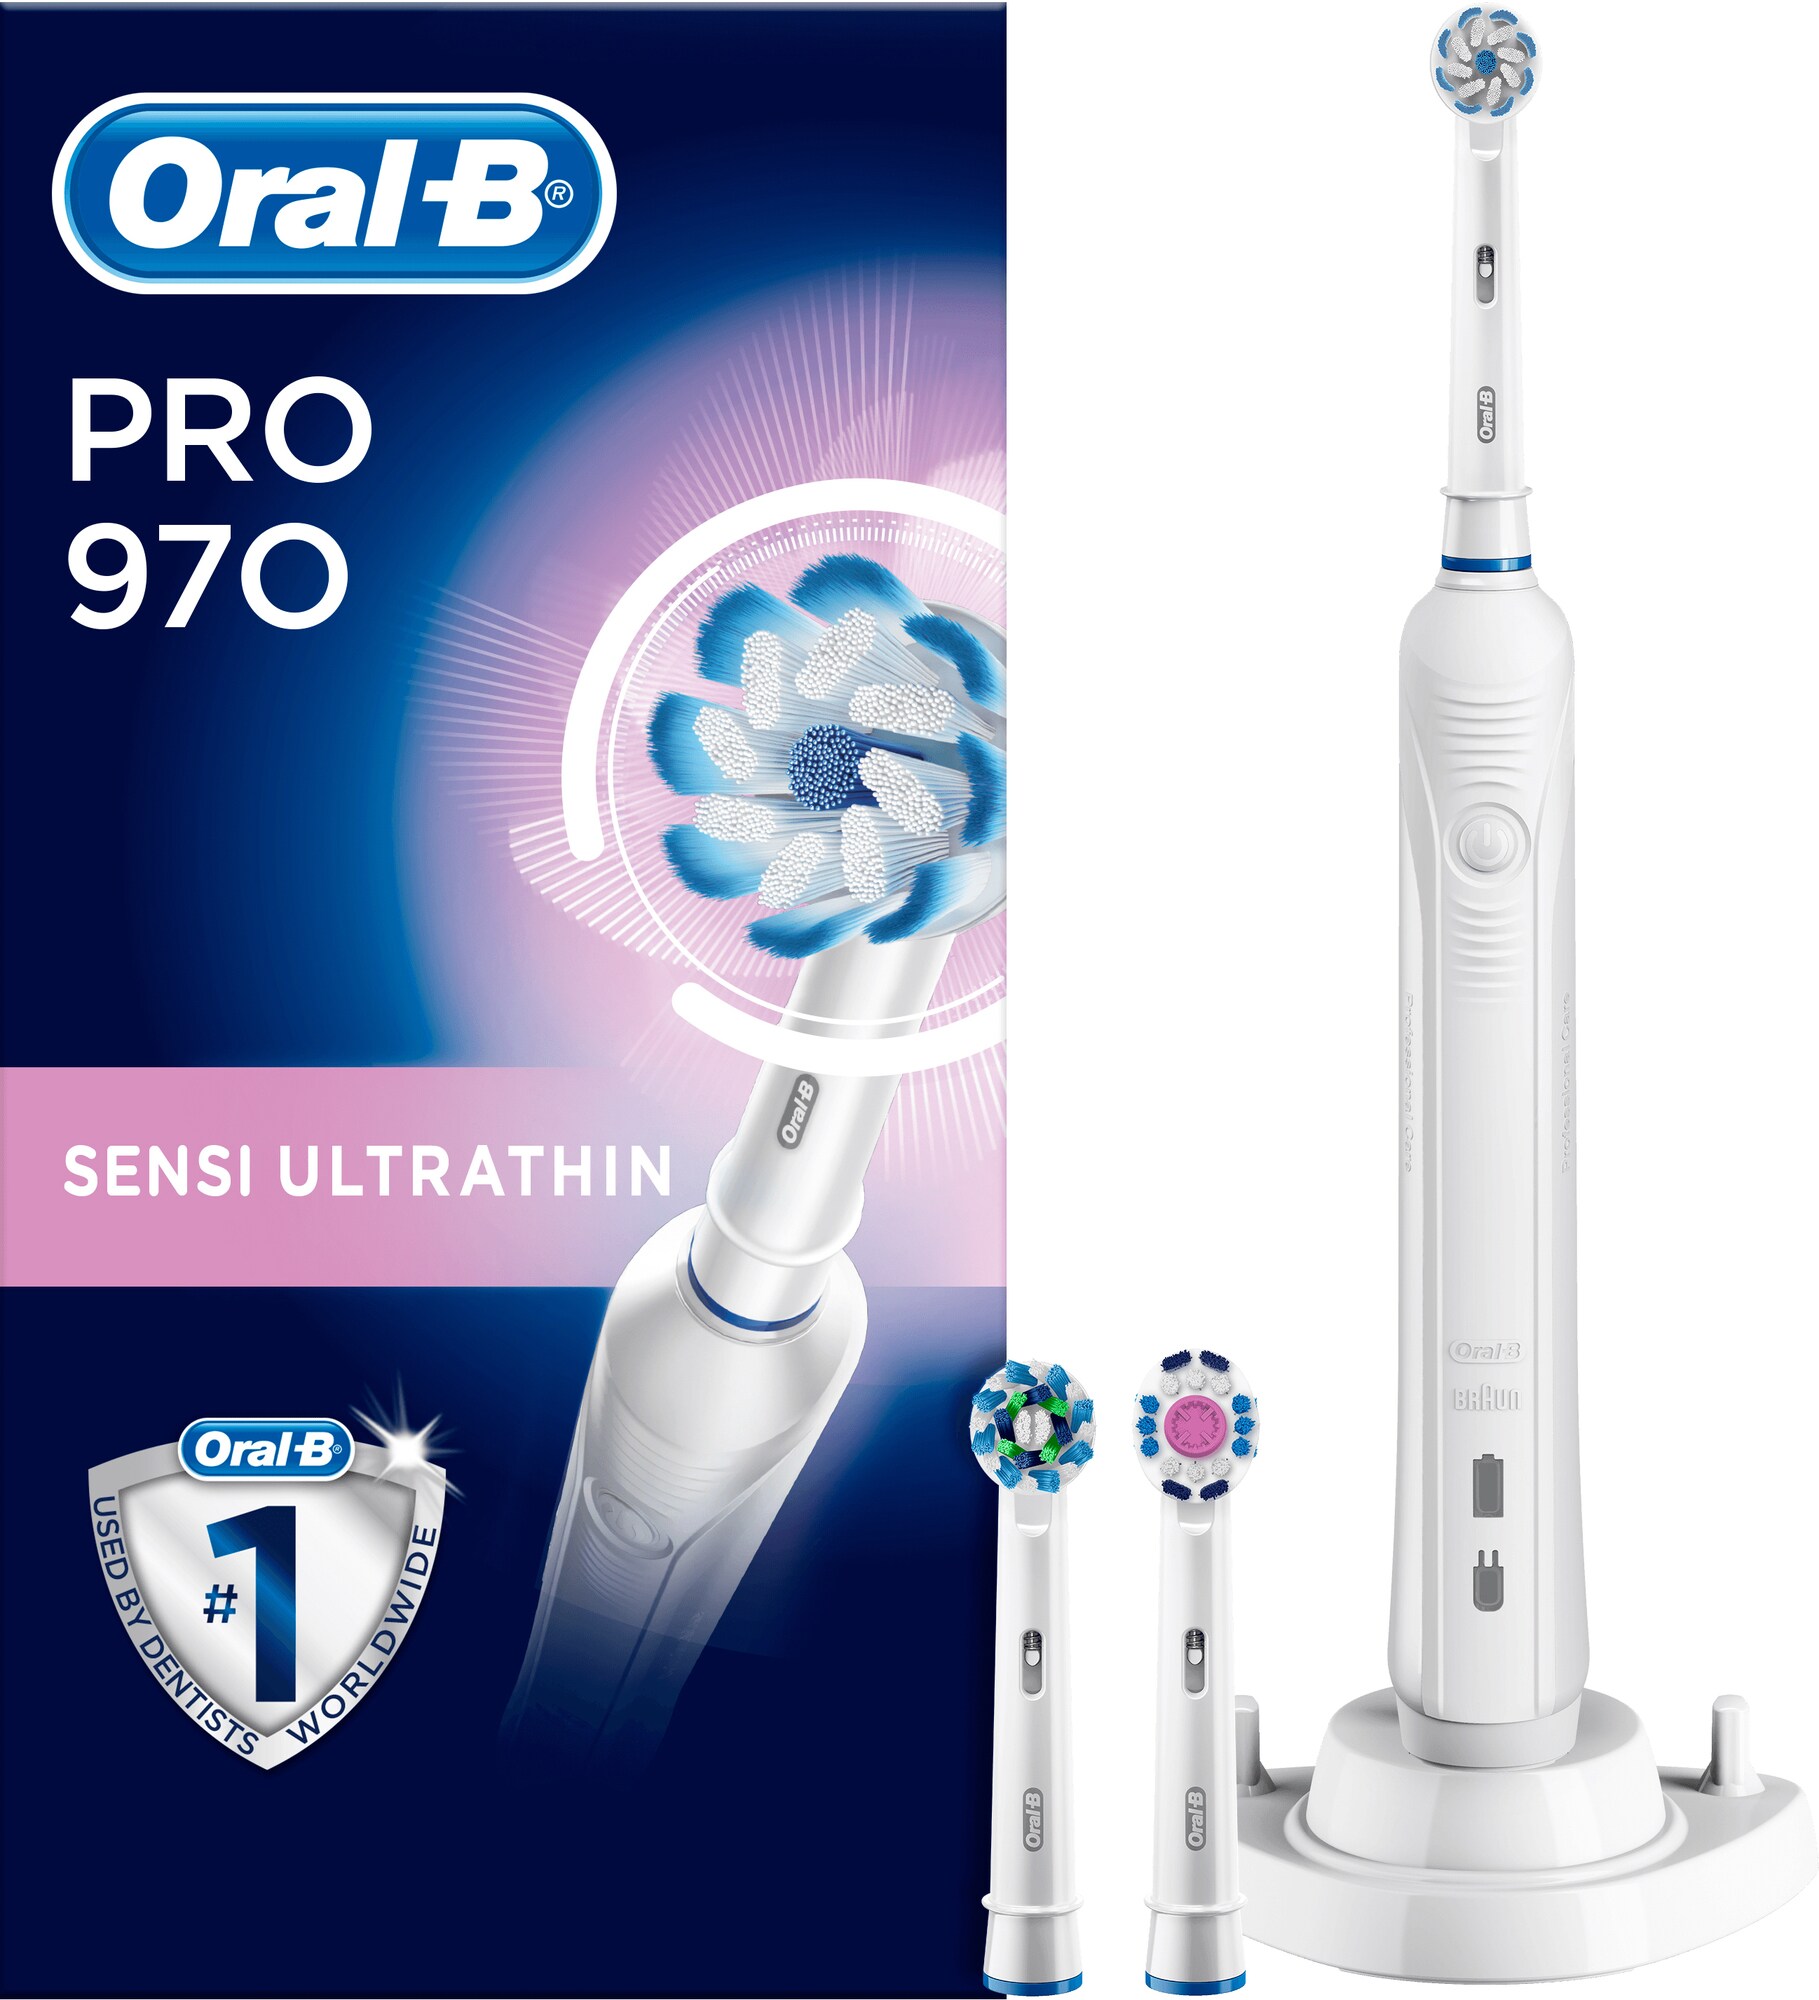 Rejse Oplader til Oral B El tandbørste både USB og strøm